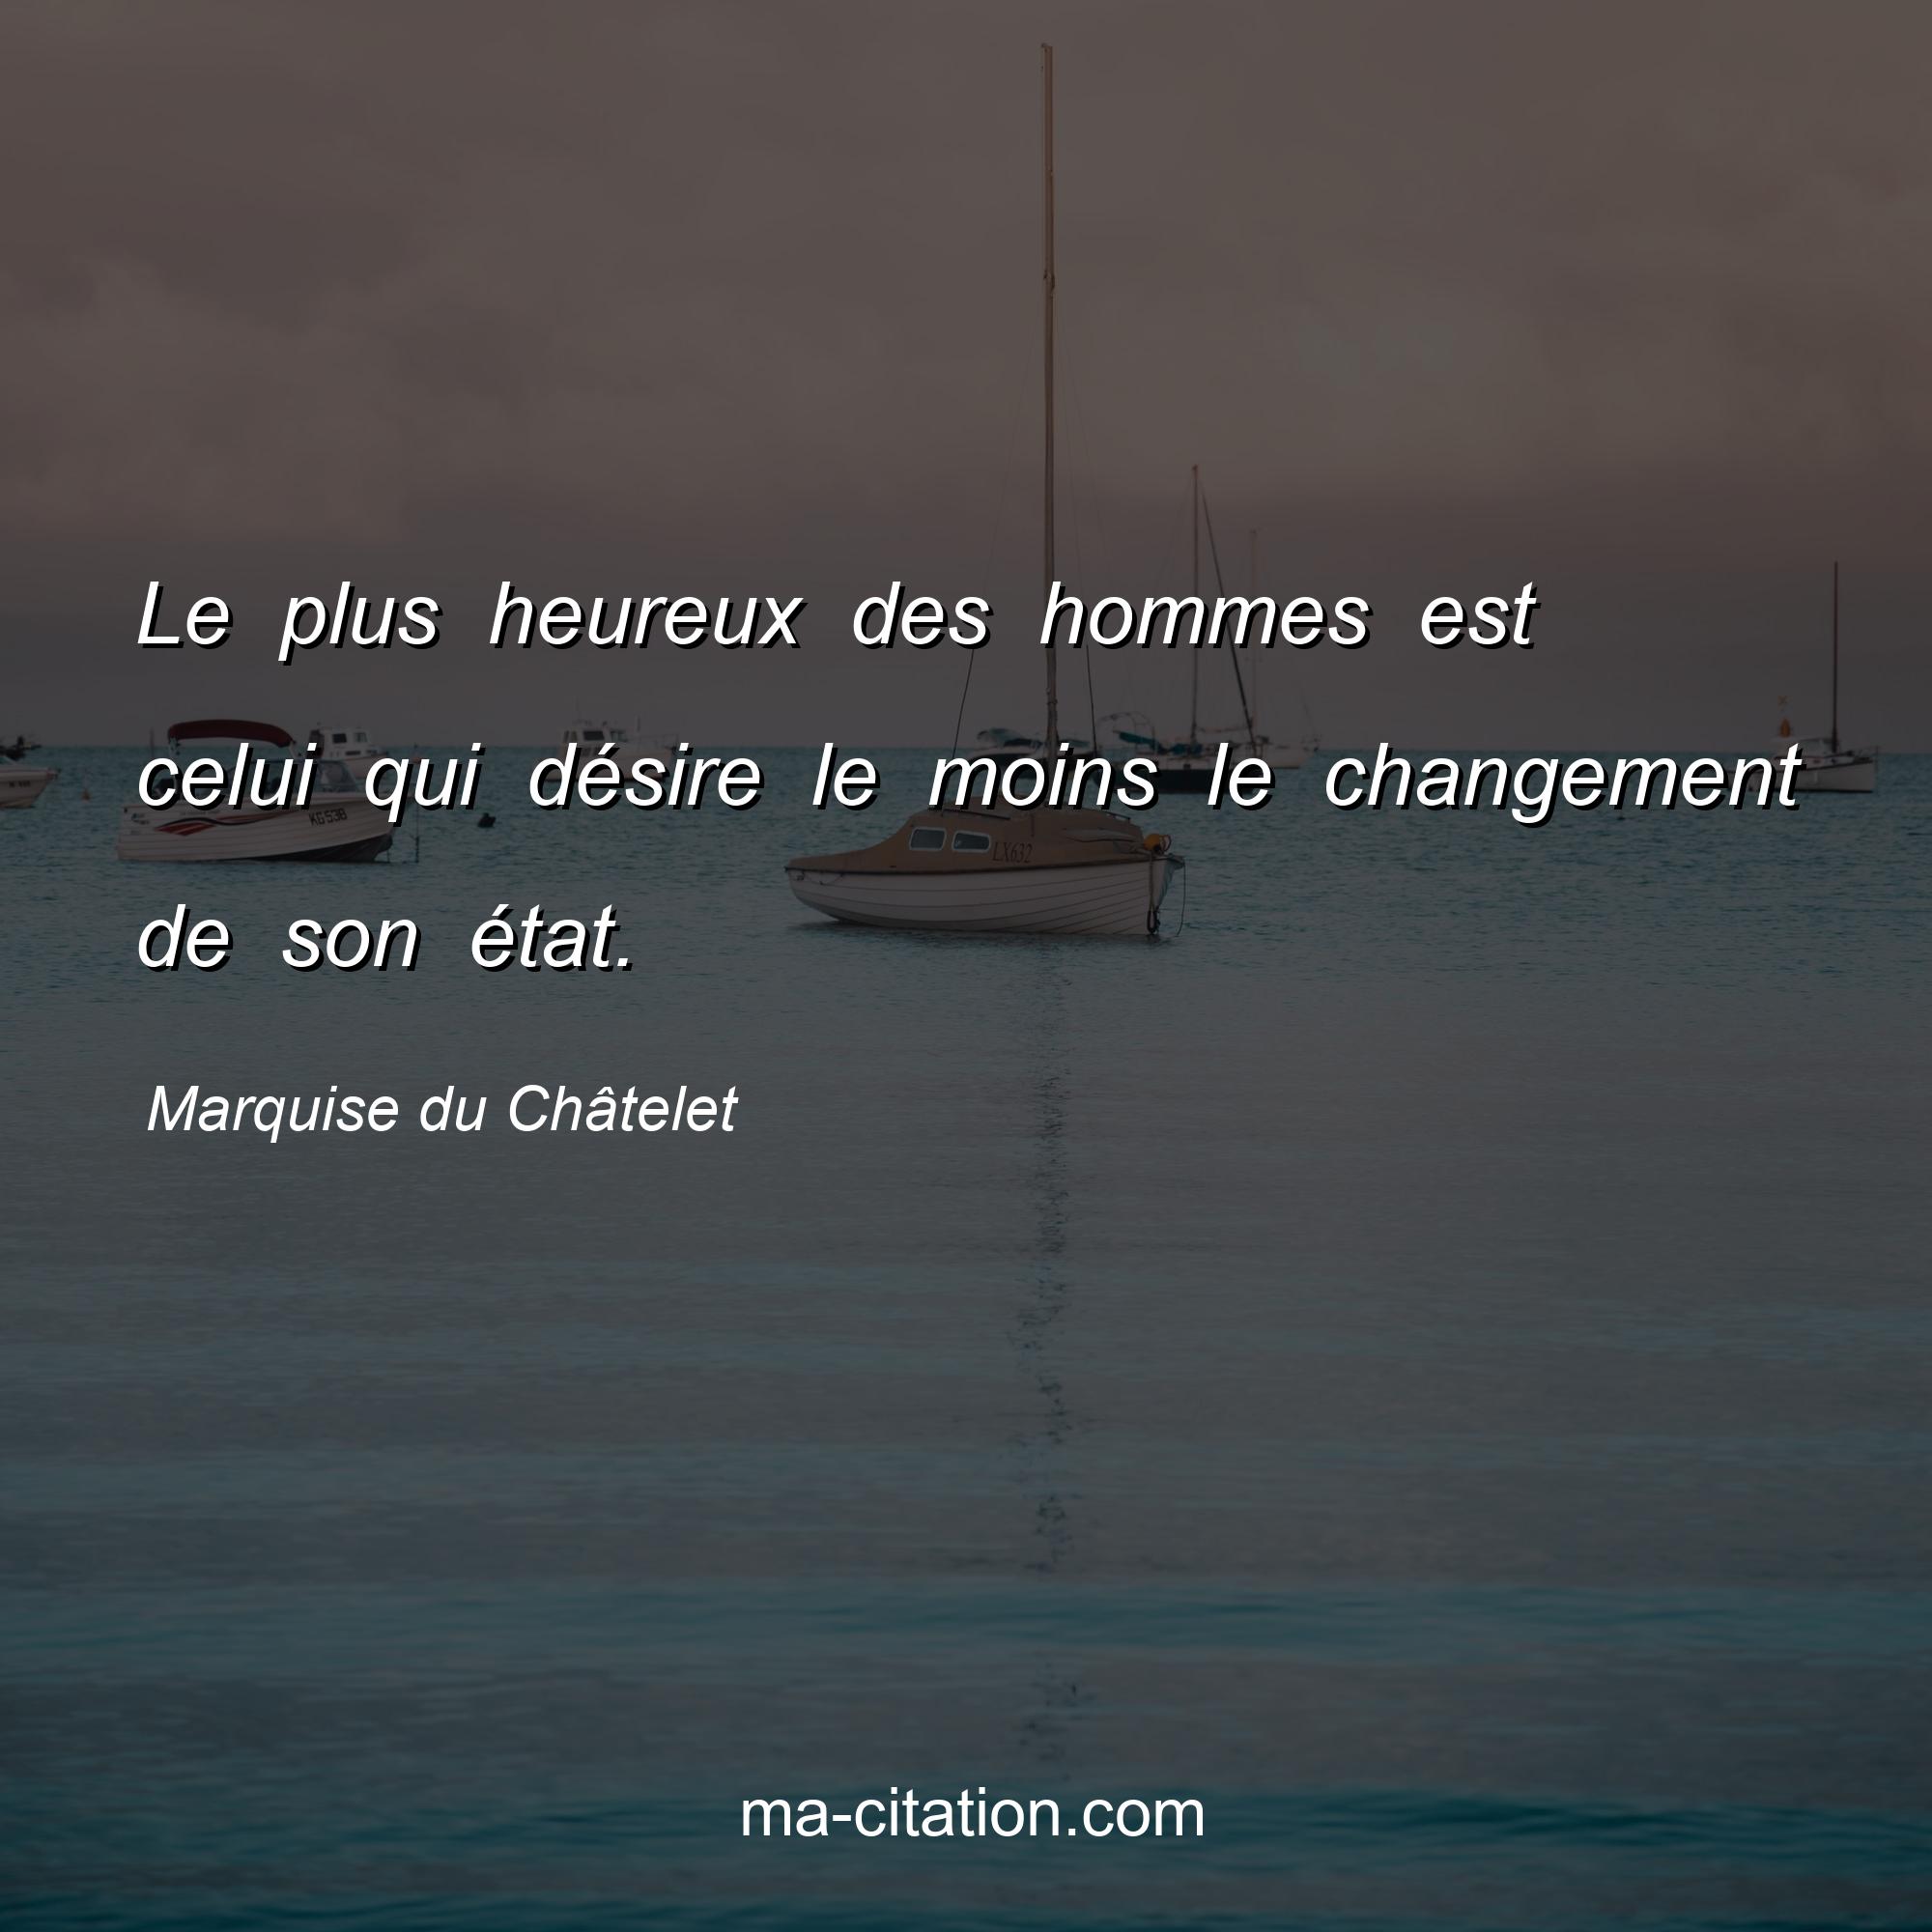 Marquise du Châtelet : Le plus heureux des hommes est celui qui désire le moins le changement de son état.